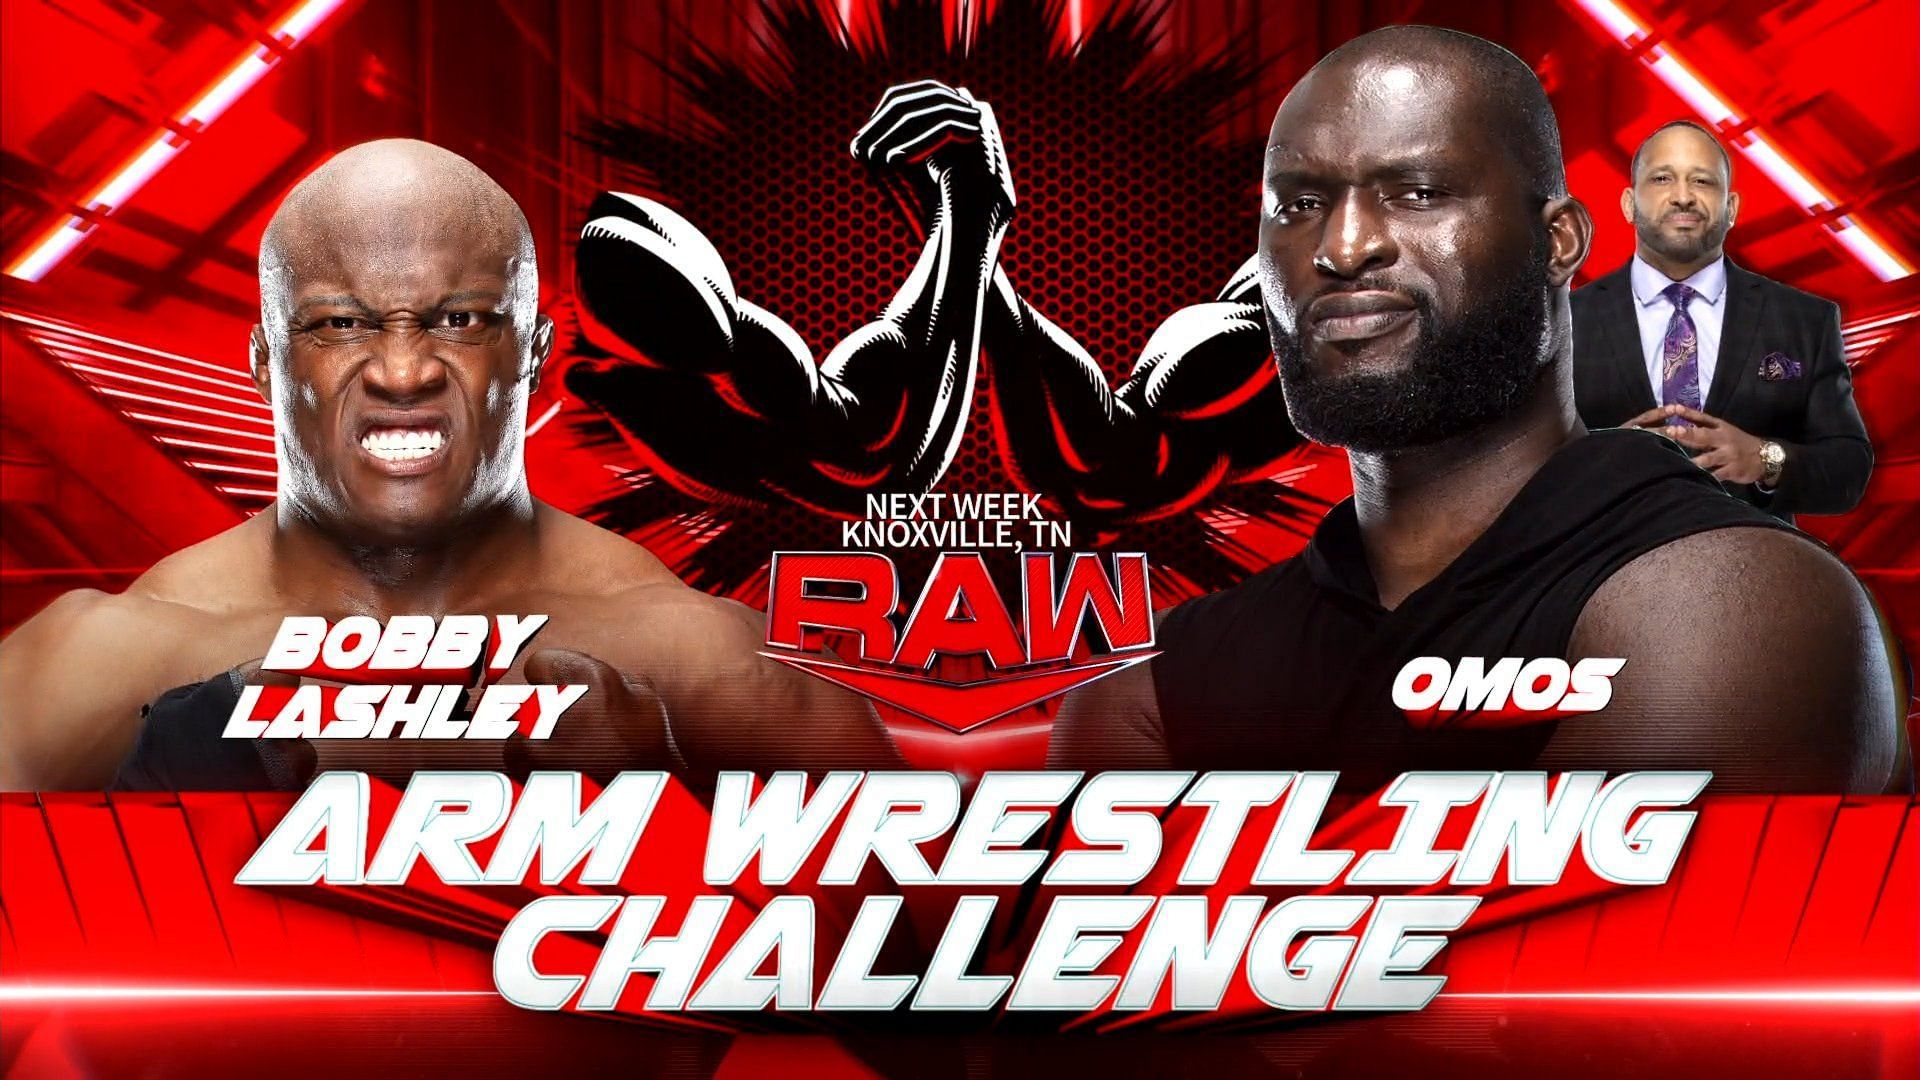 WWE Raw में इस हफ्ते बॉबी लैश्ले और ओमोस का आमना-सामना होने जा रहा है